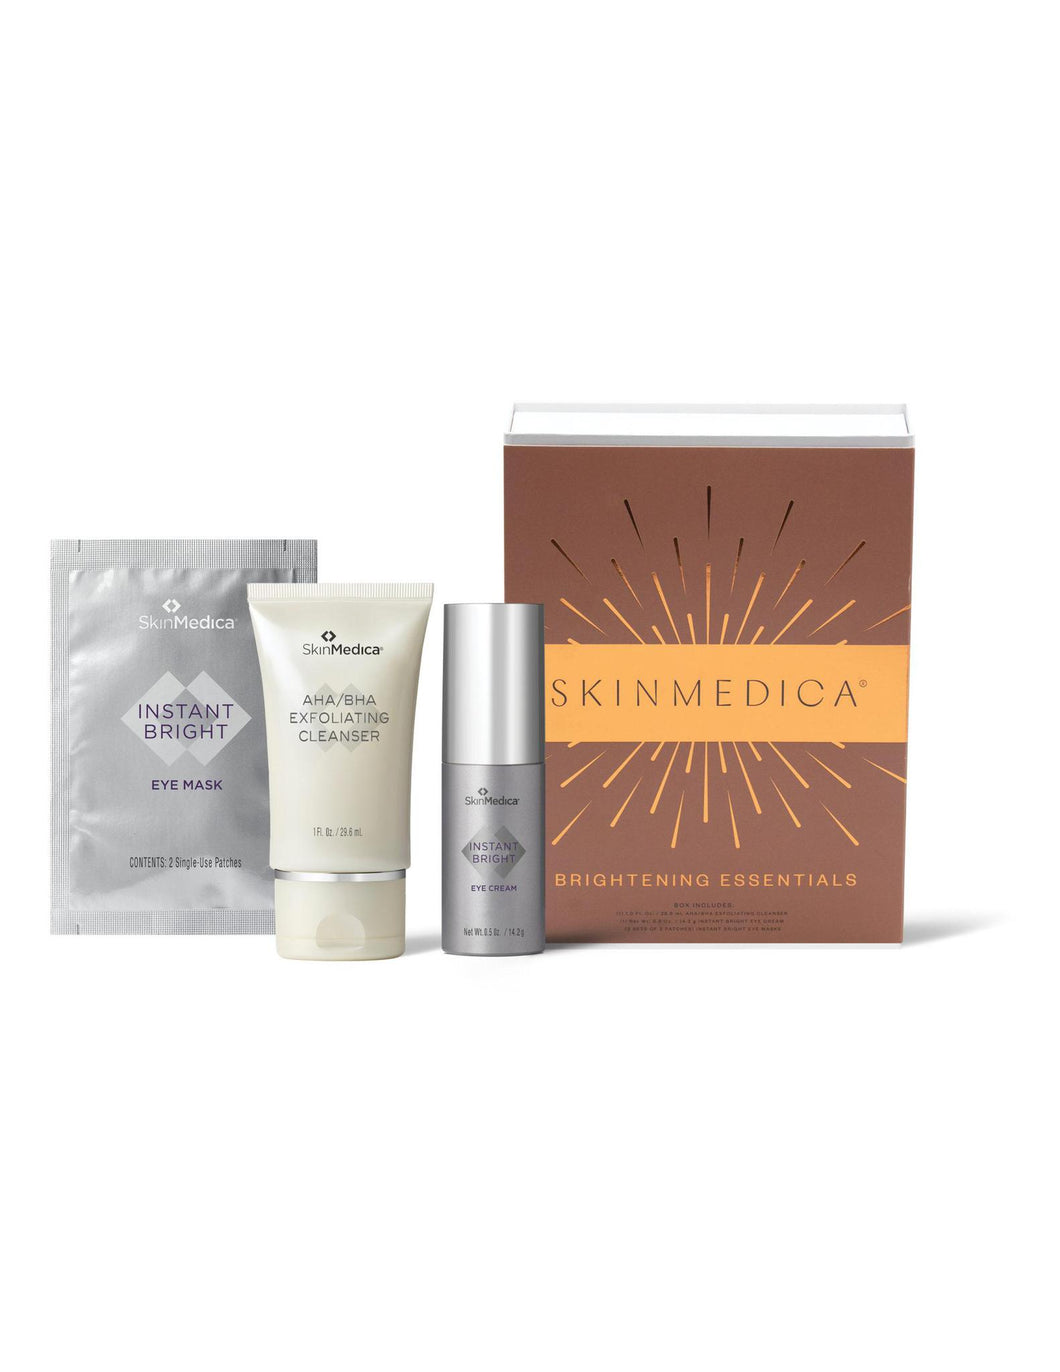 SkinMedica Brightening Essentials Gift Set